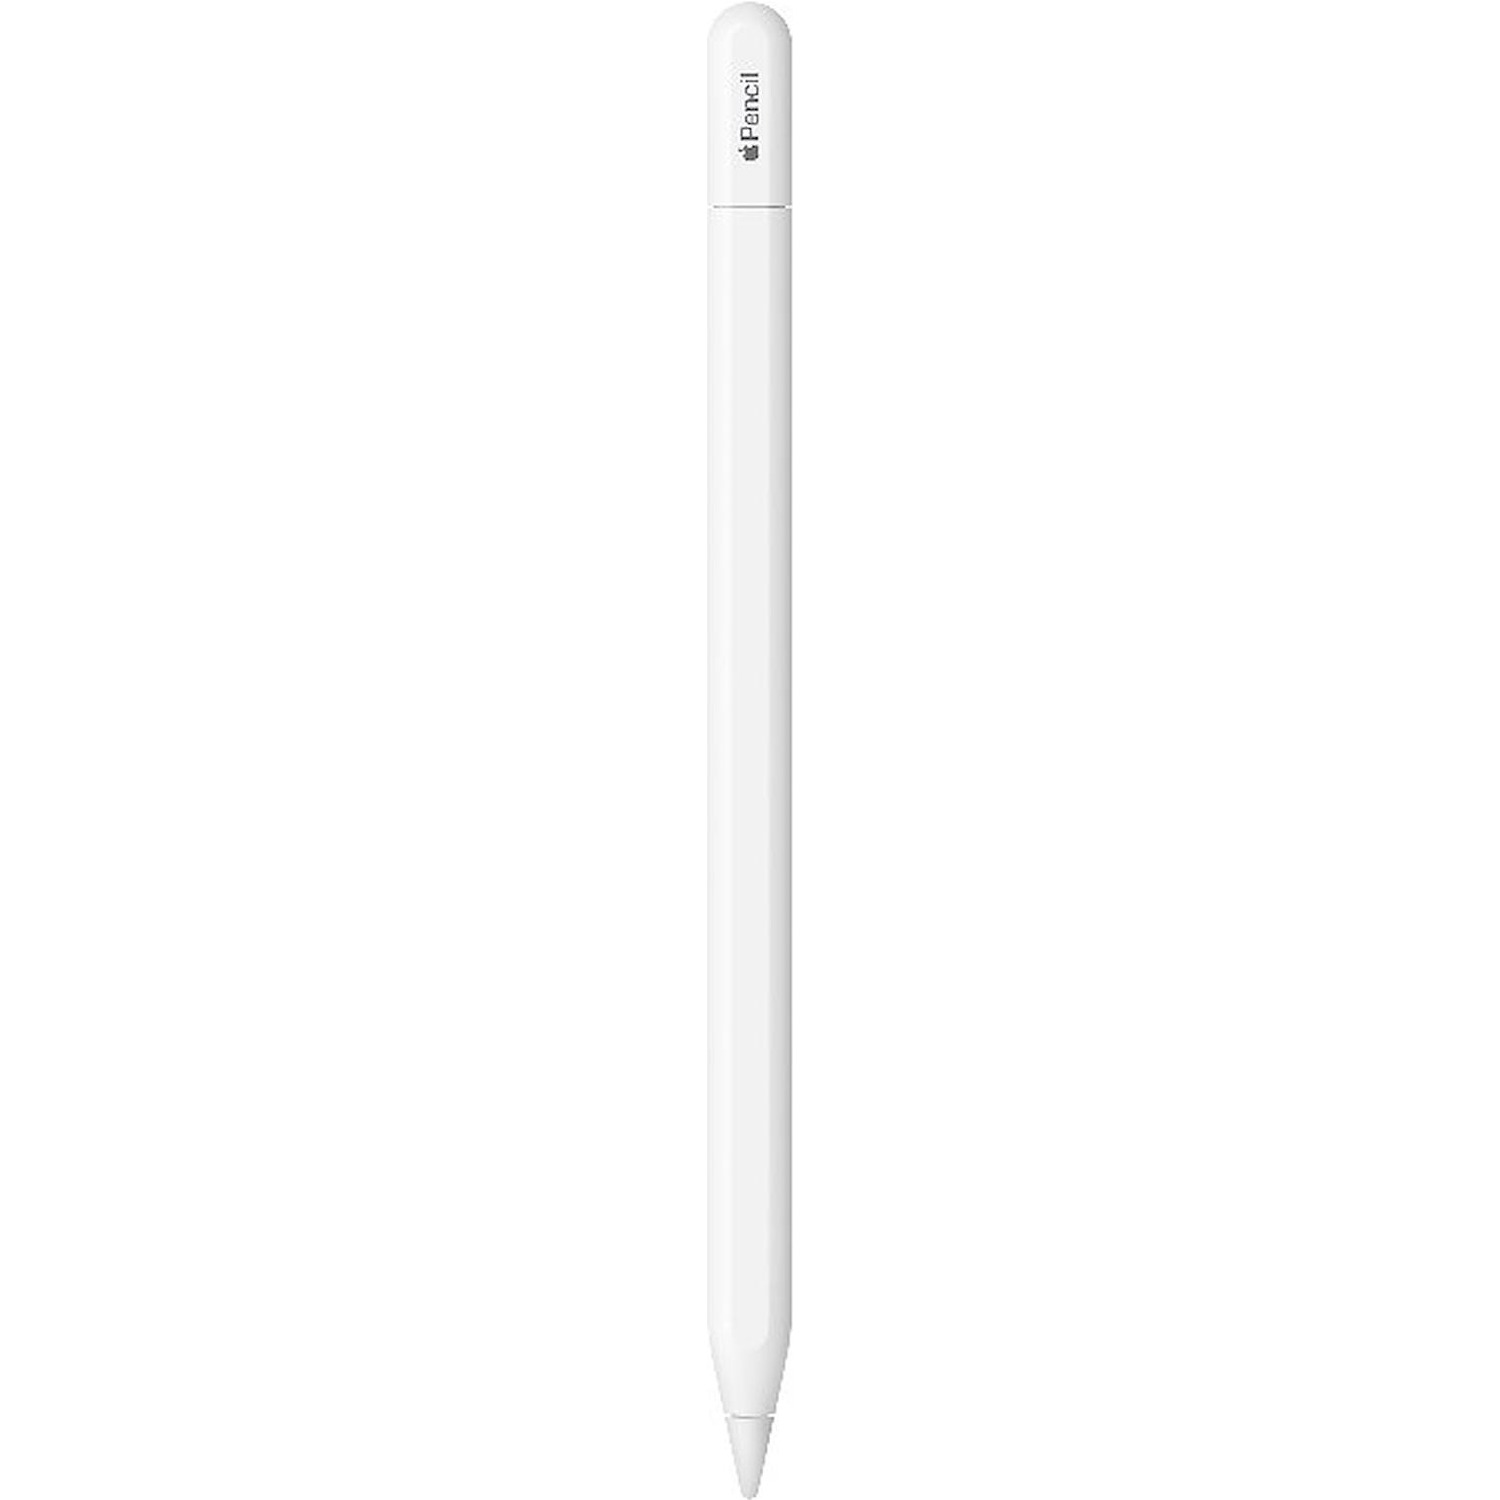 Immagine per Apple pencil USB-C da DIMOStore